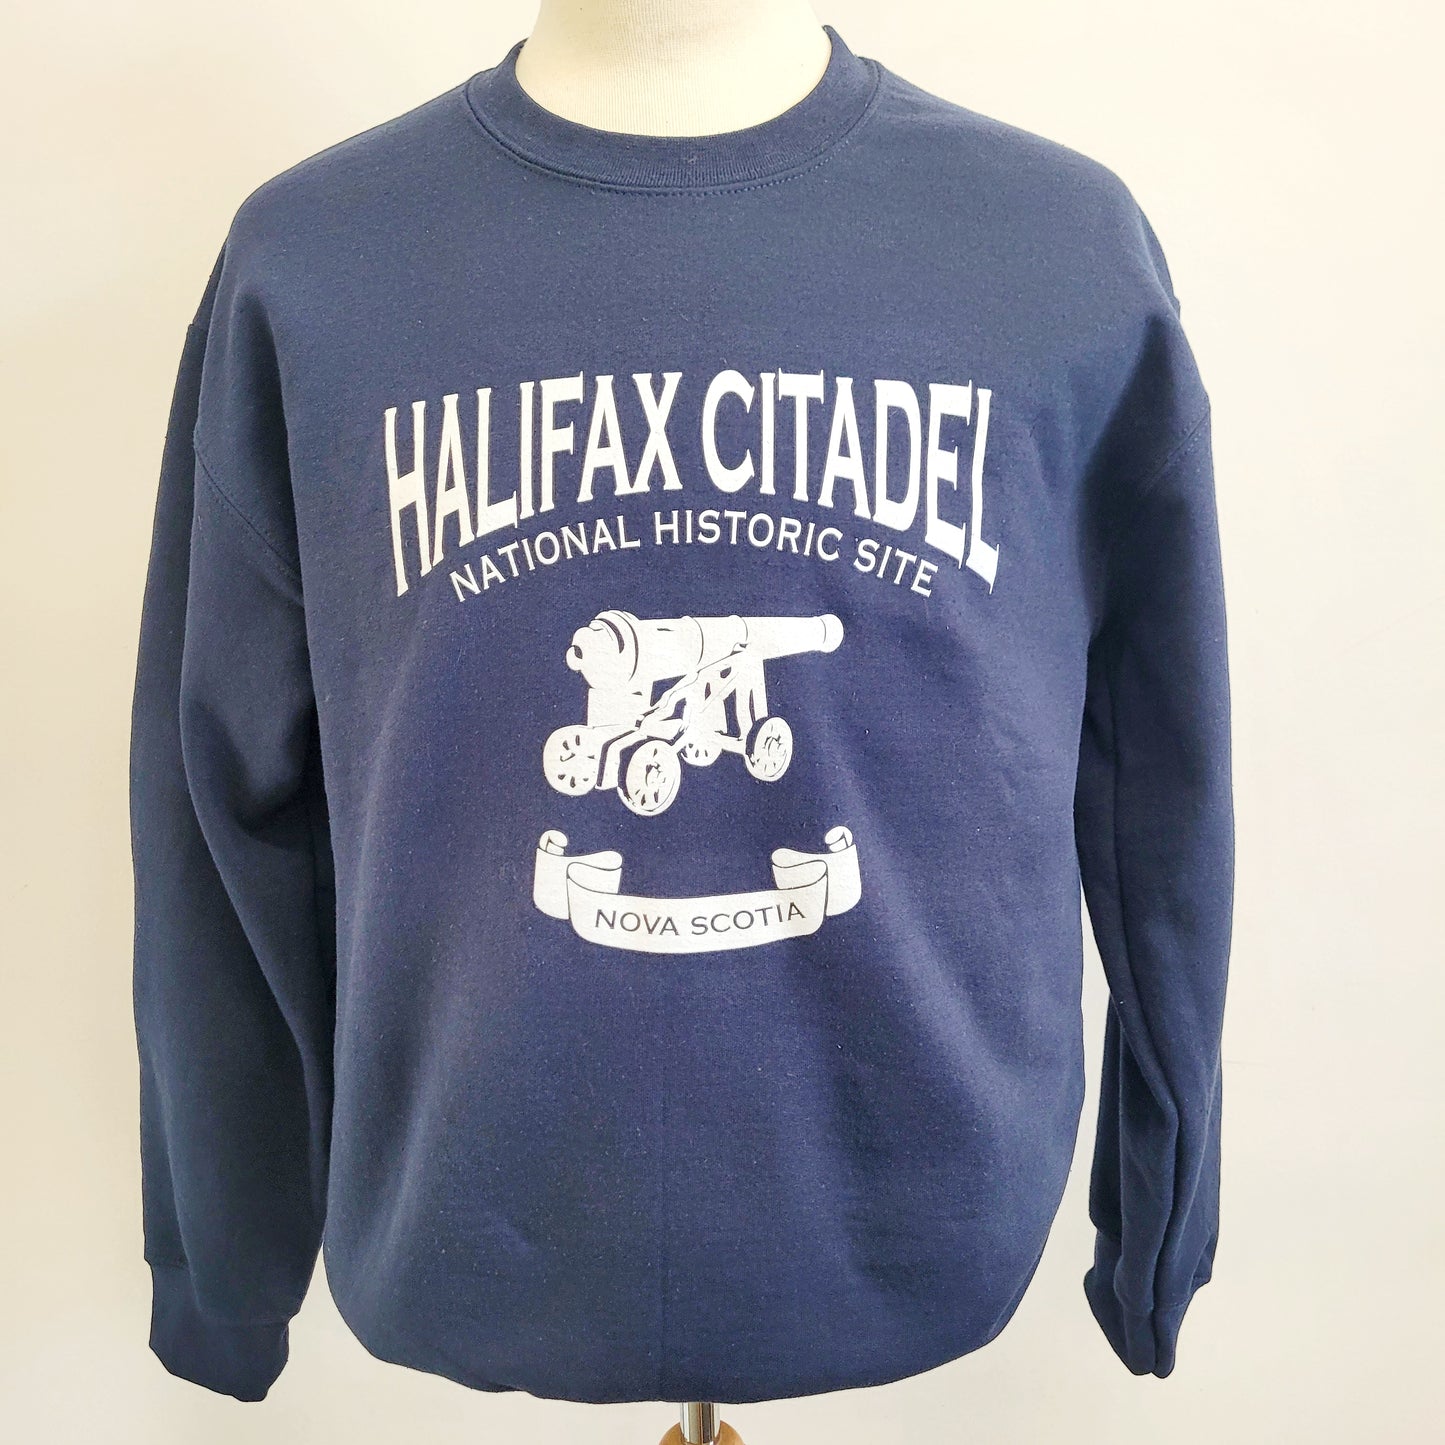 Halifax Citadel Crew Neck Sweatshirt